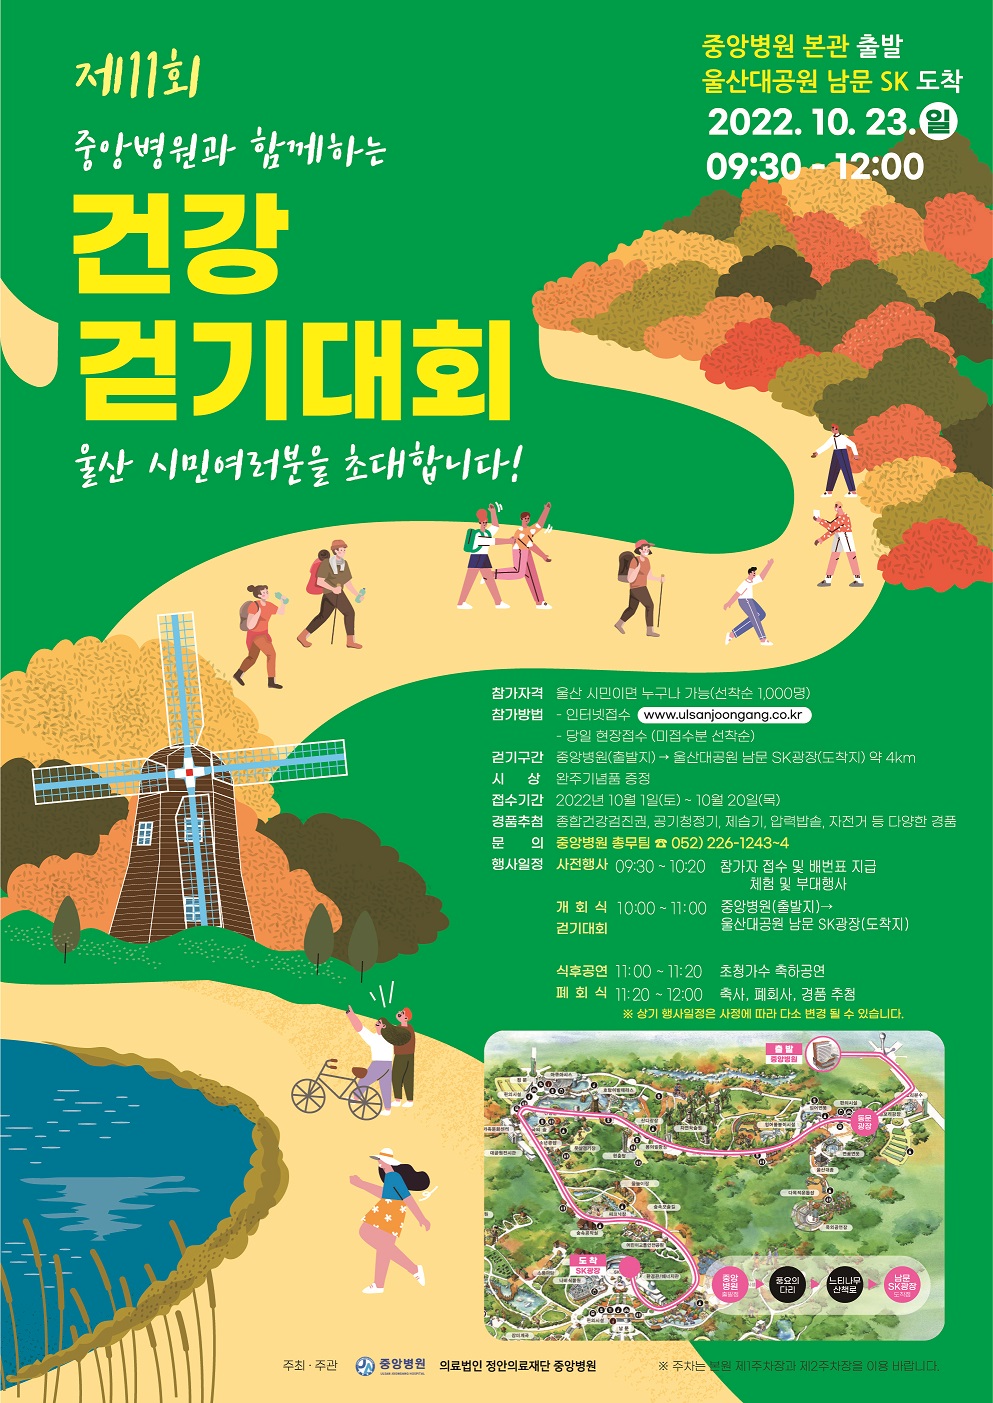 걷기대회 포스터(최종)_1006.jpg 